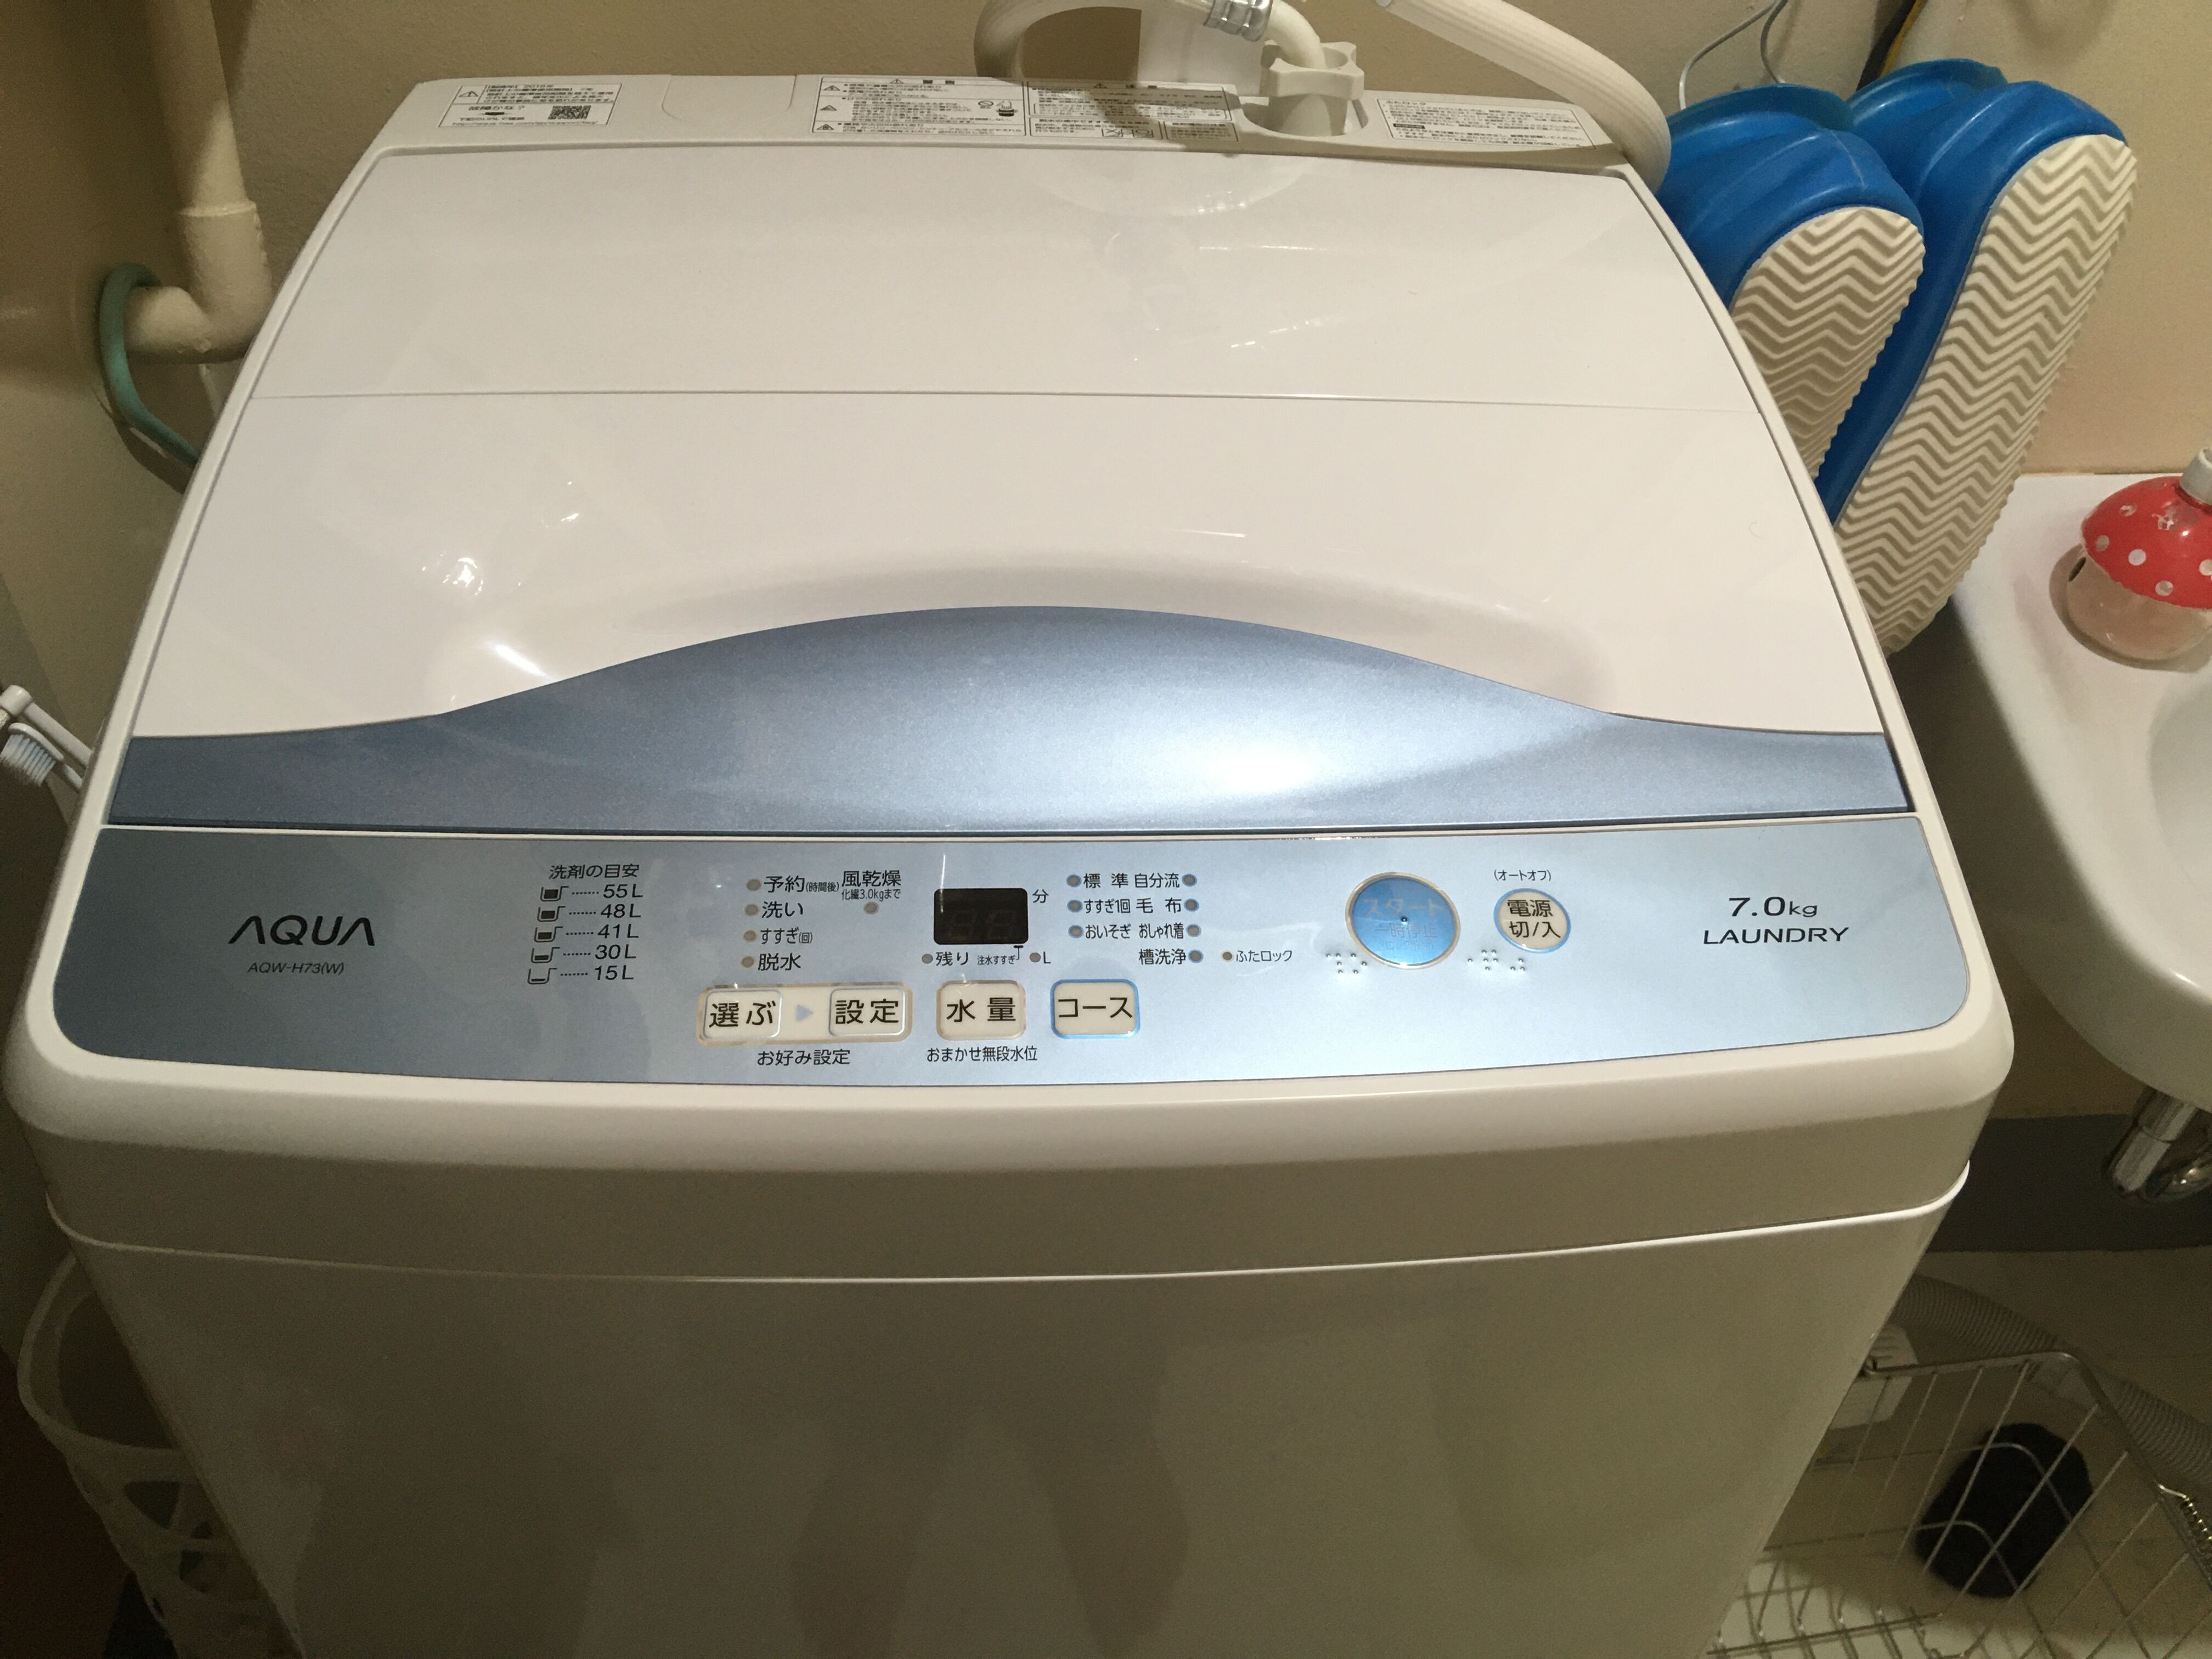 間違いだらけの生活用品選び:AQUAの洗濯機AQW-H73（W）を買った。